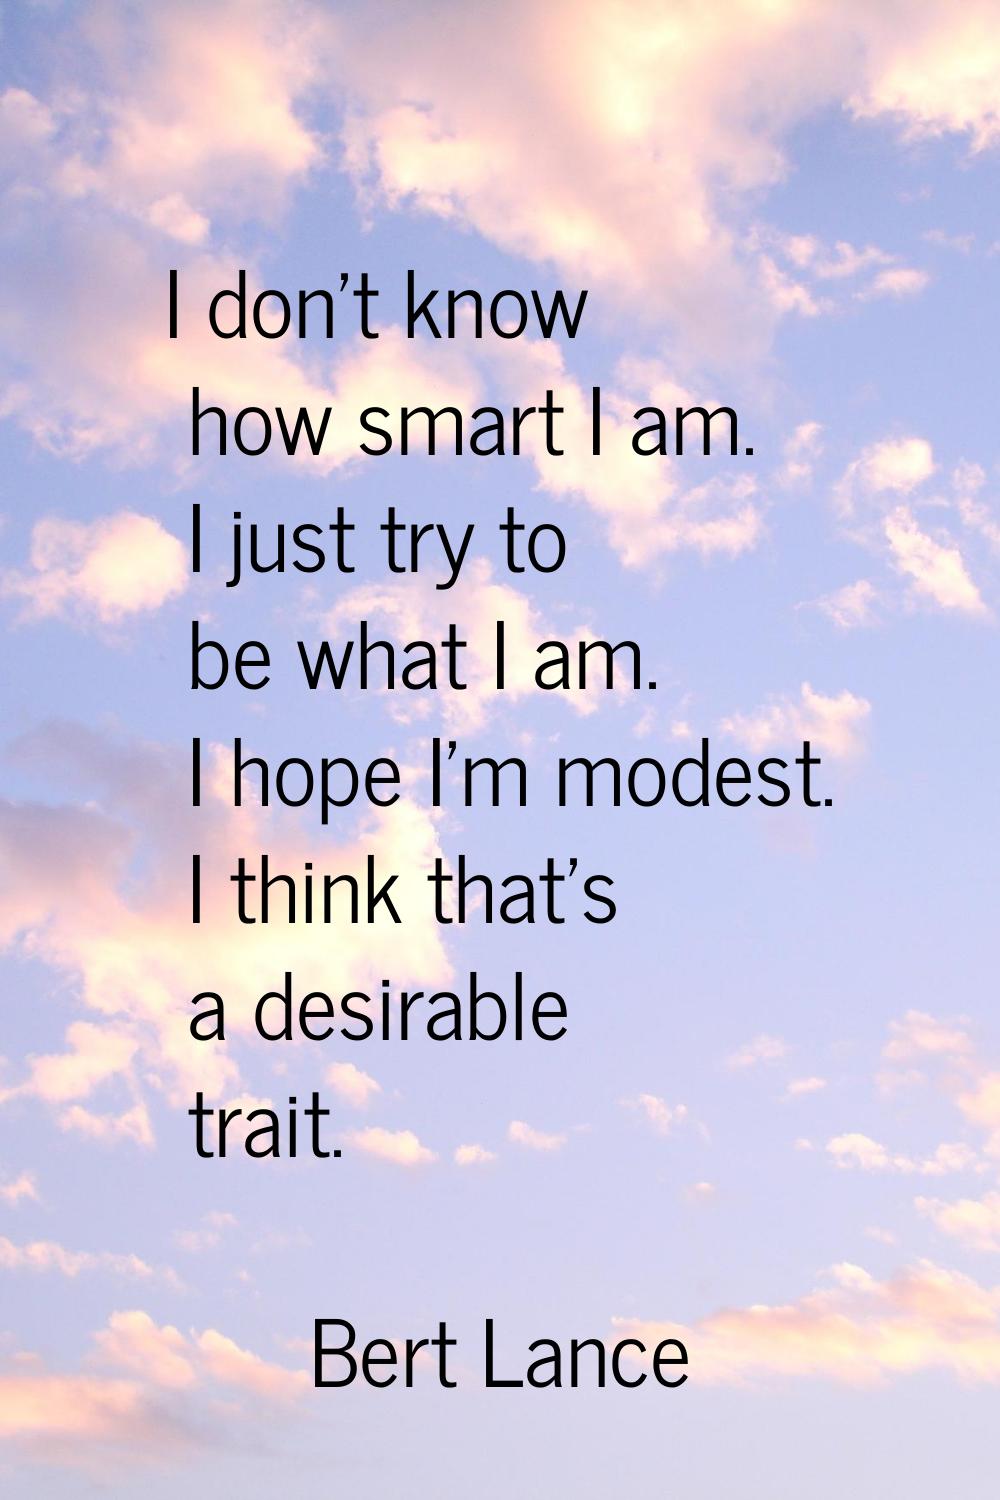 I don't know how smart I am. I just try to be what I am. I hope I'm modest. I think that's a desira